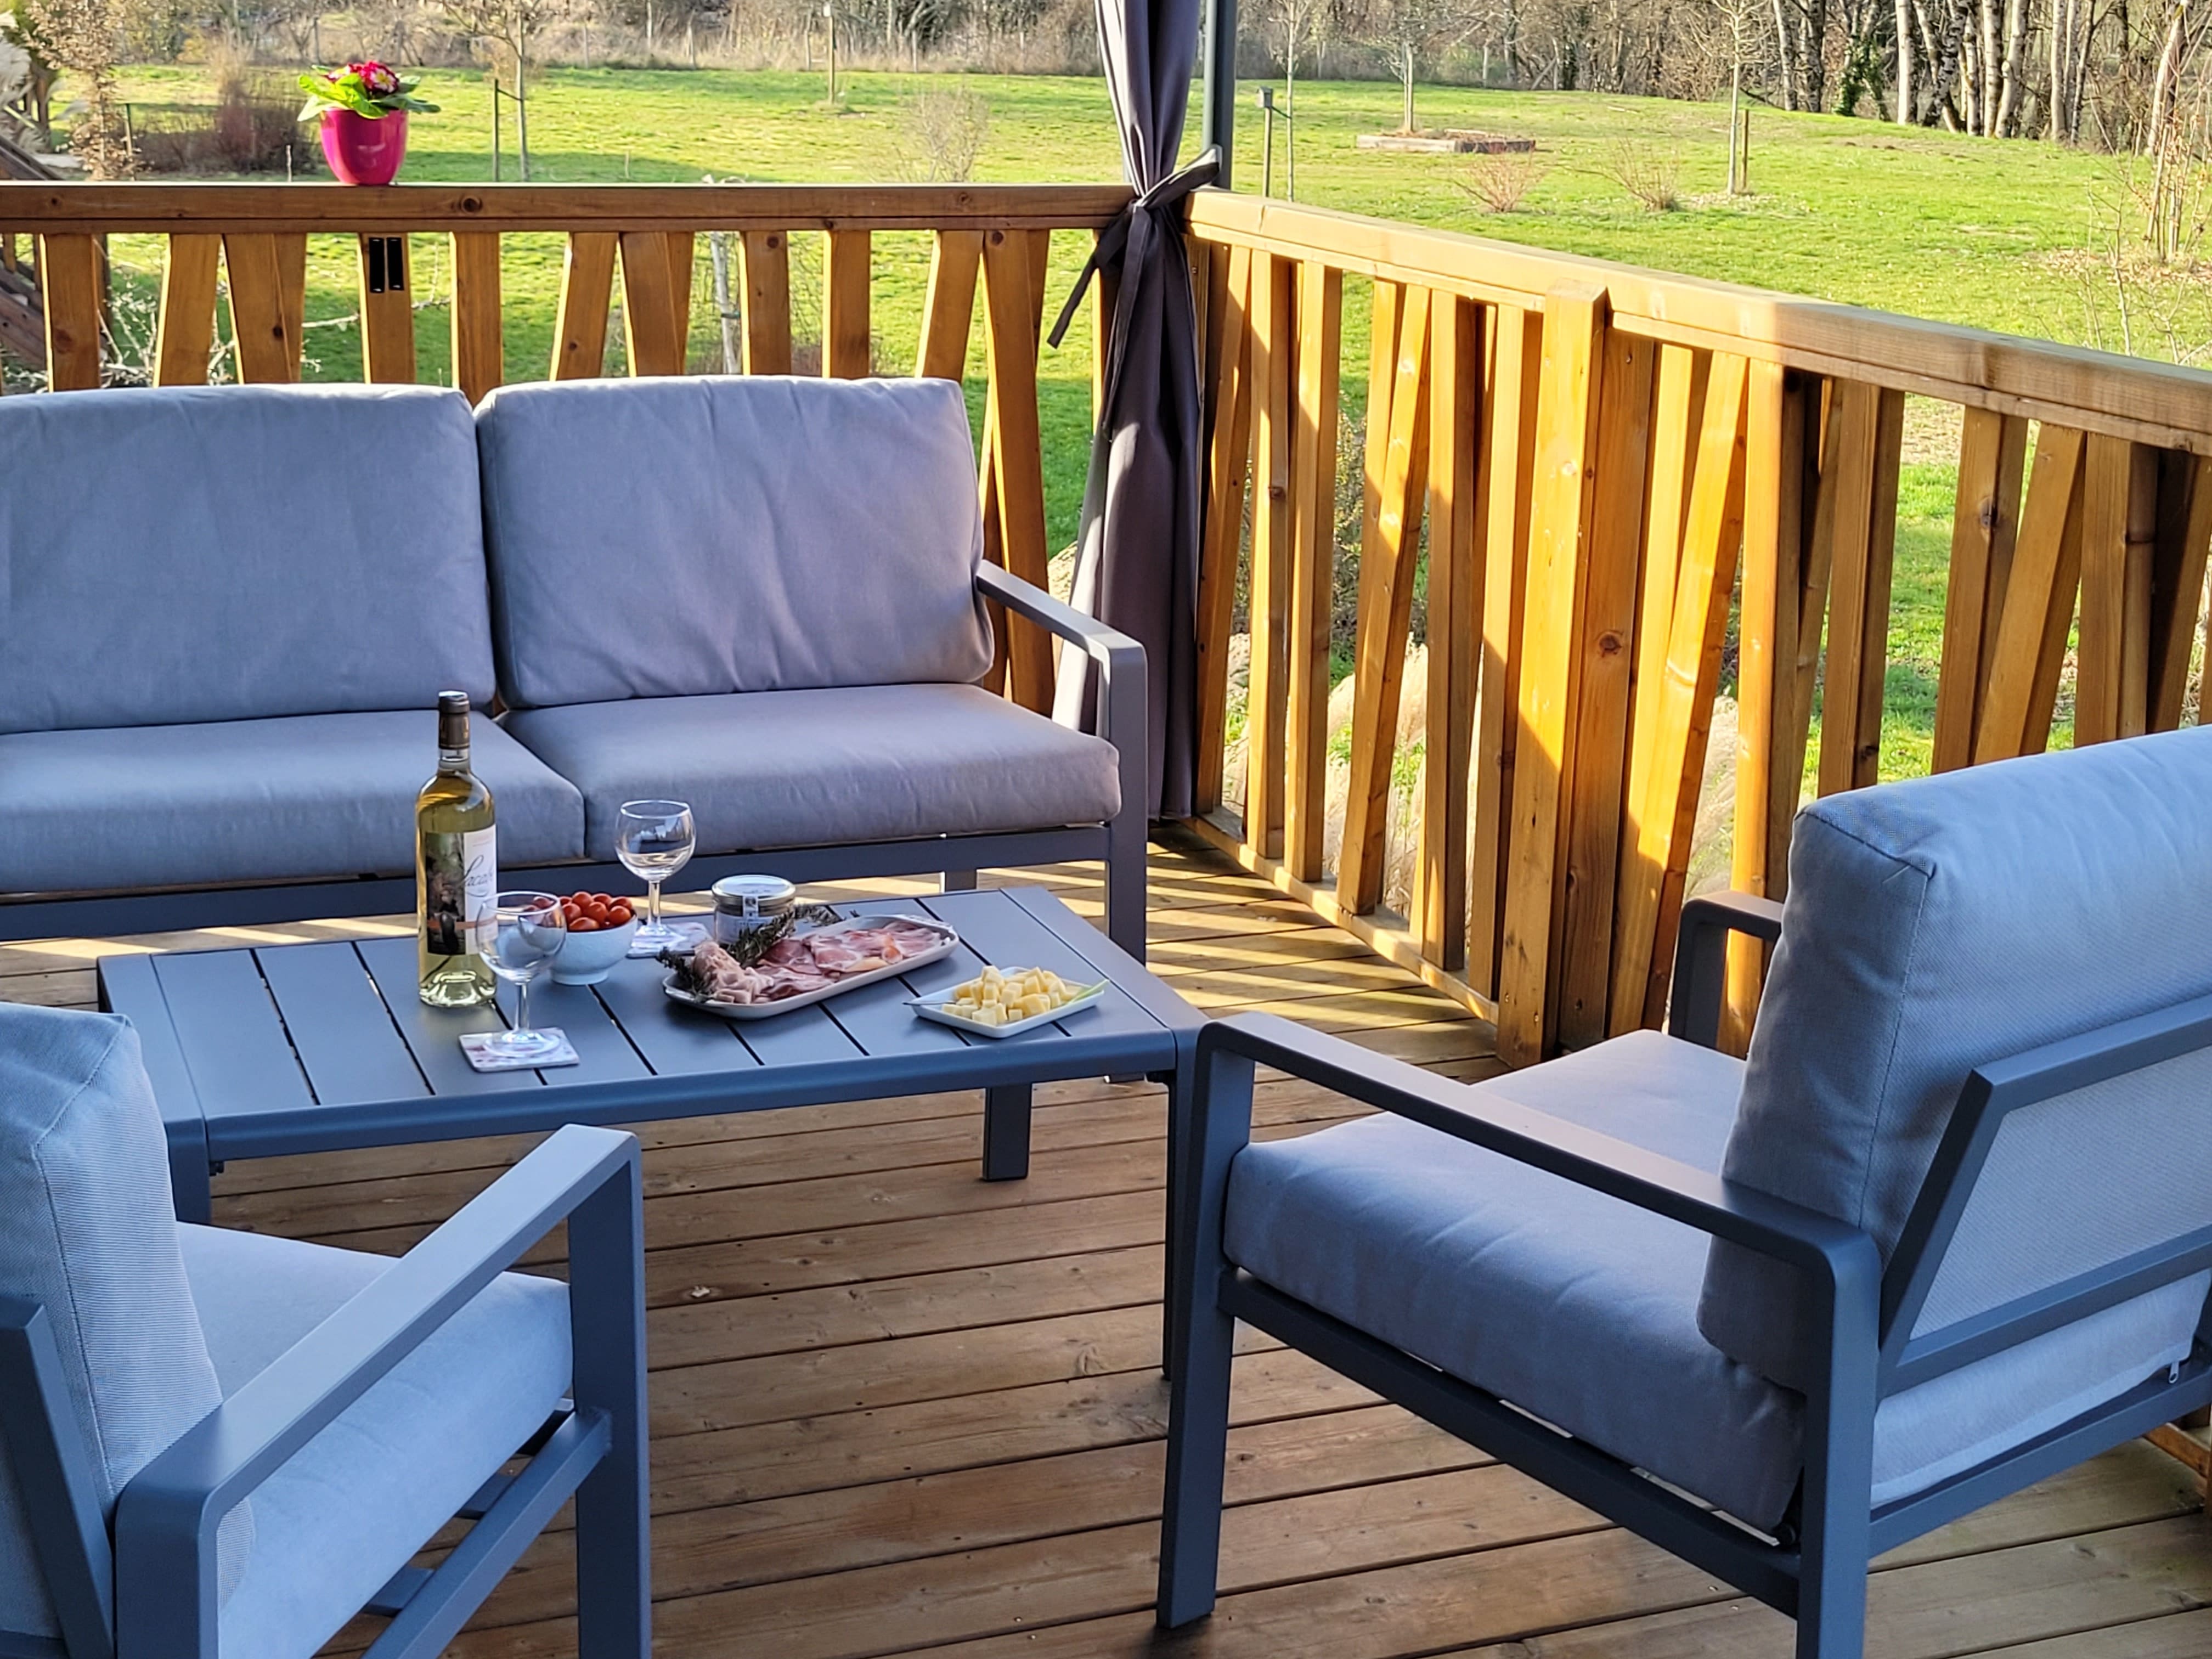 Terrasse ensoleillée avec vue sur un paysage verdoyant, une table dressée pour un apéro gourmand avec des produits frais et du vin local.